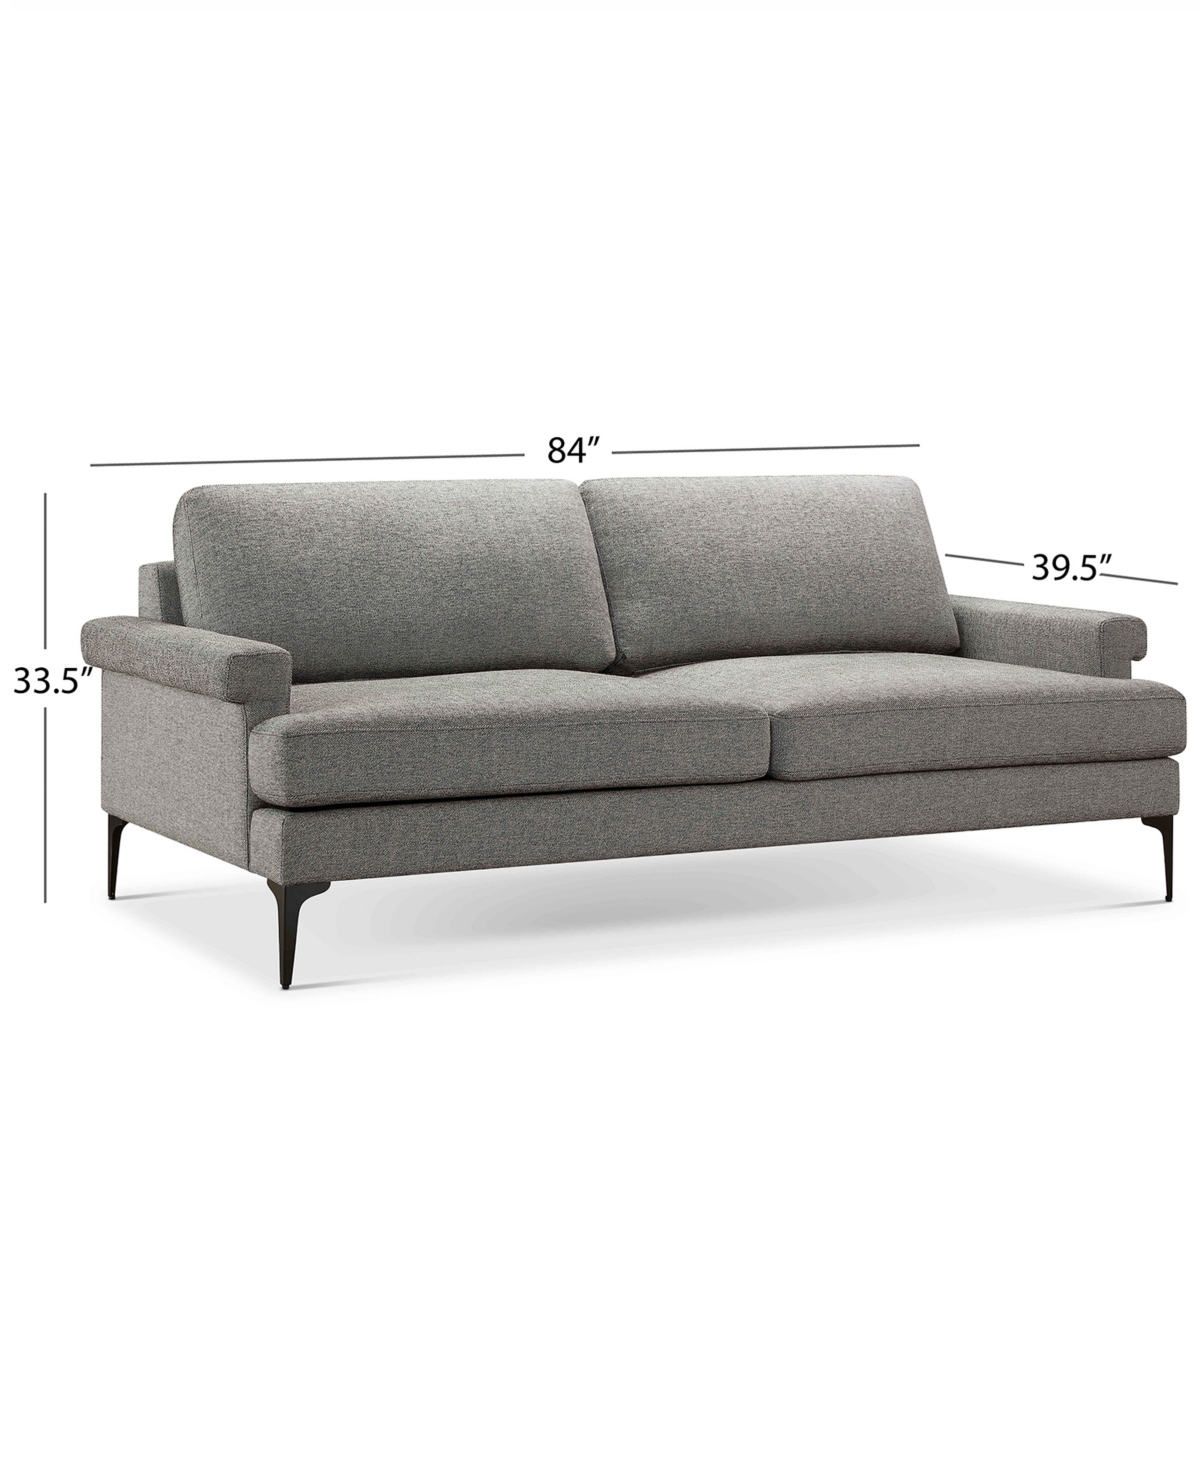 Shop Abbyson Living Evella 84" Fabric Sofa In Gray